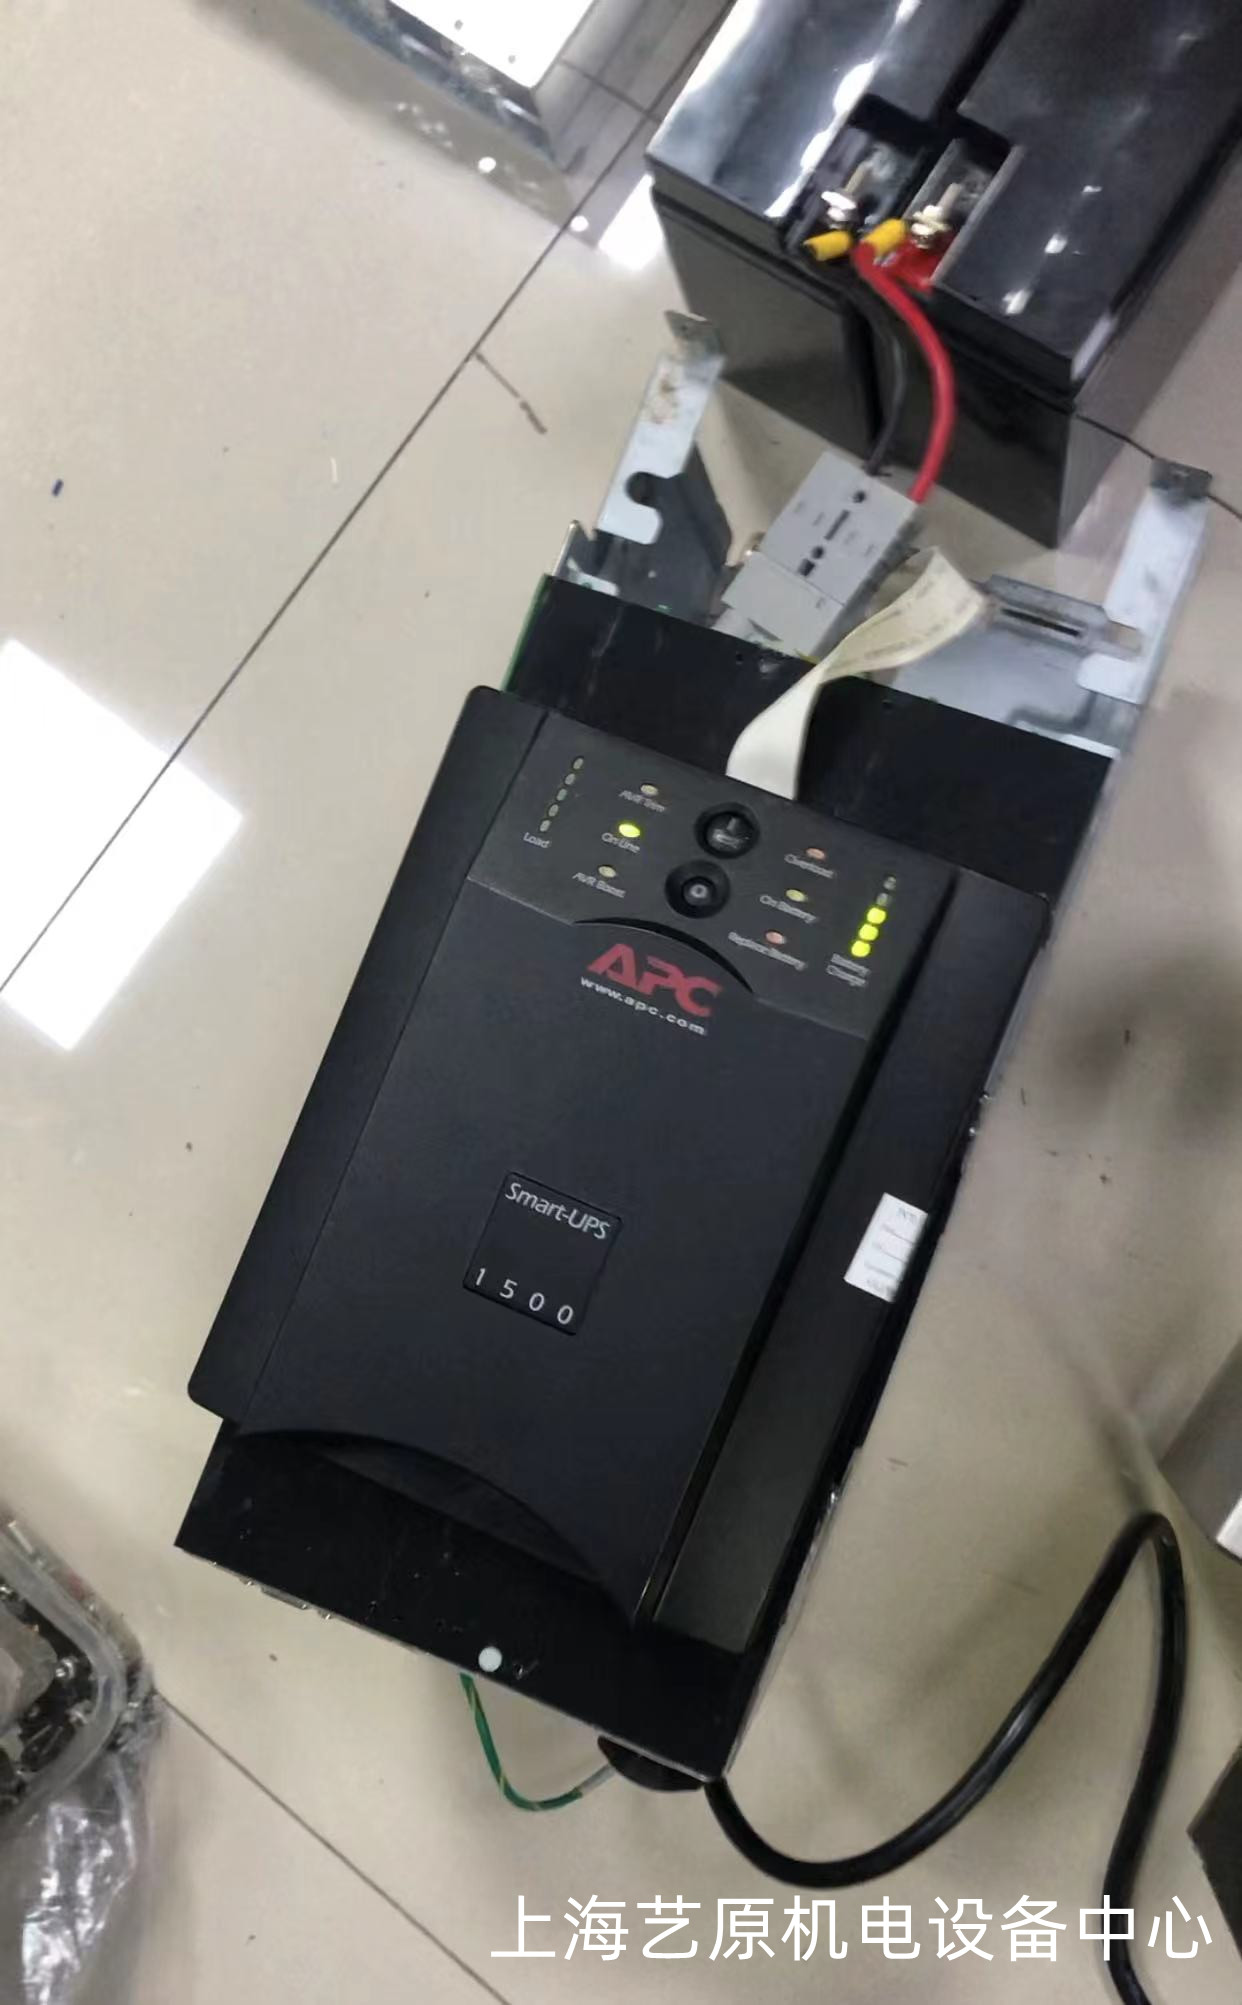 铜陵APC-Smart-UPS-1500不间断电源维修上电无反应 工业电源